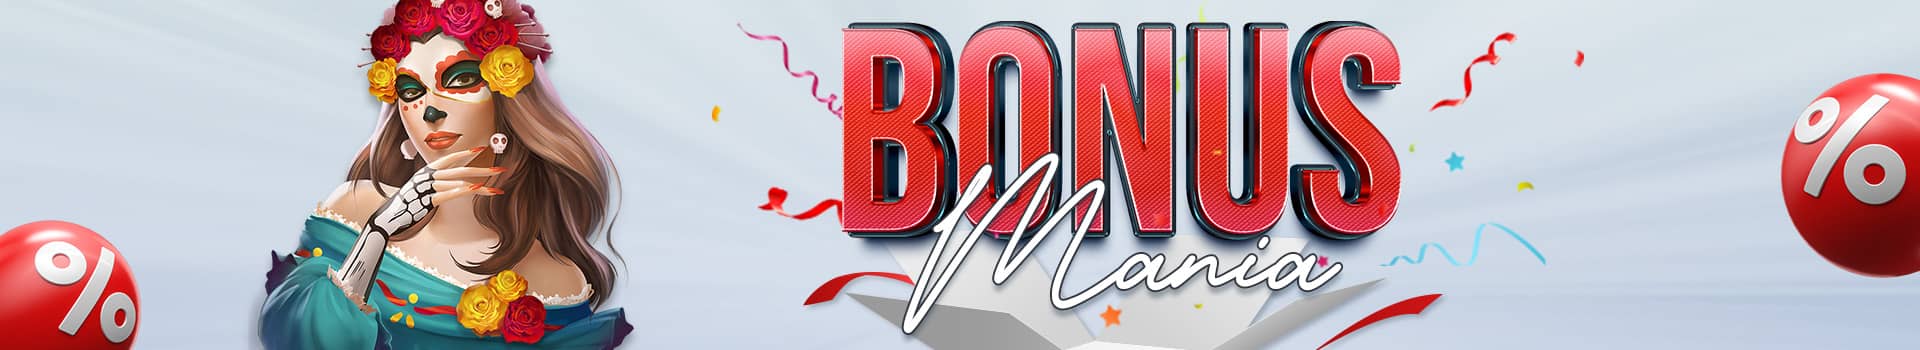 Up to 325% best online bingo bonus